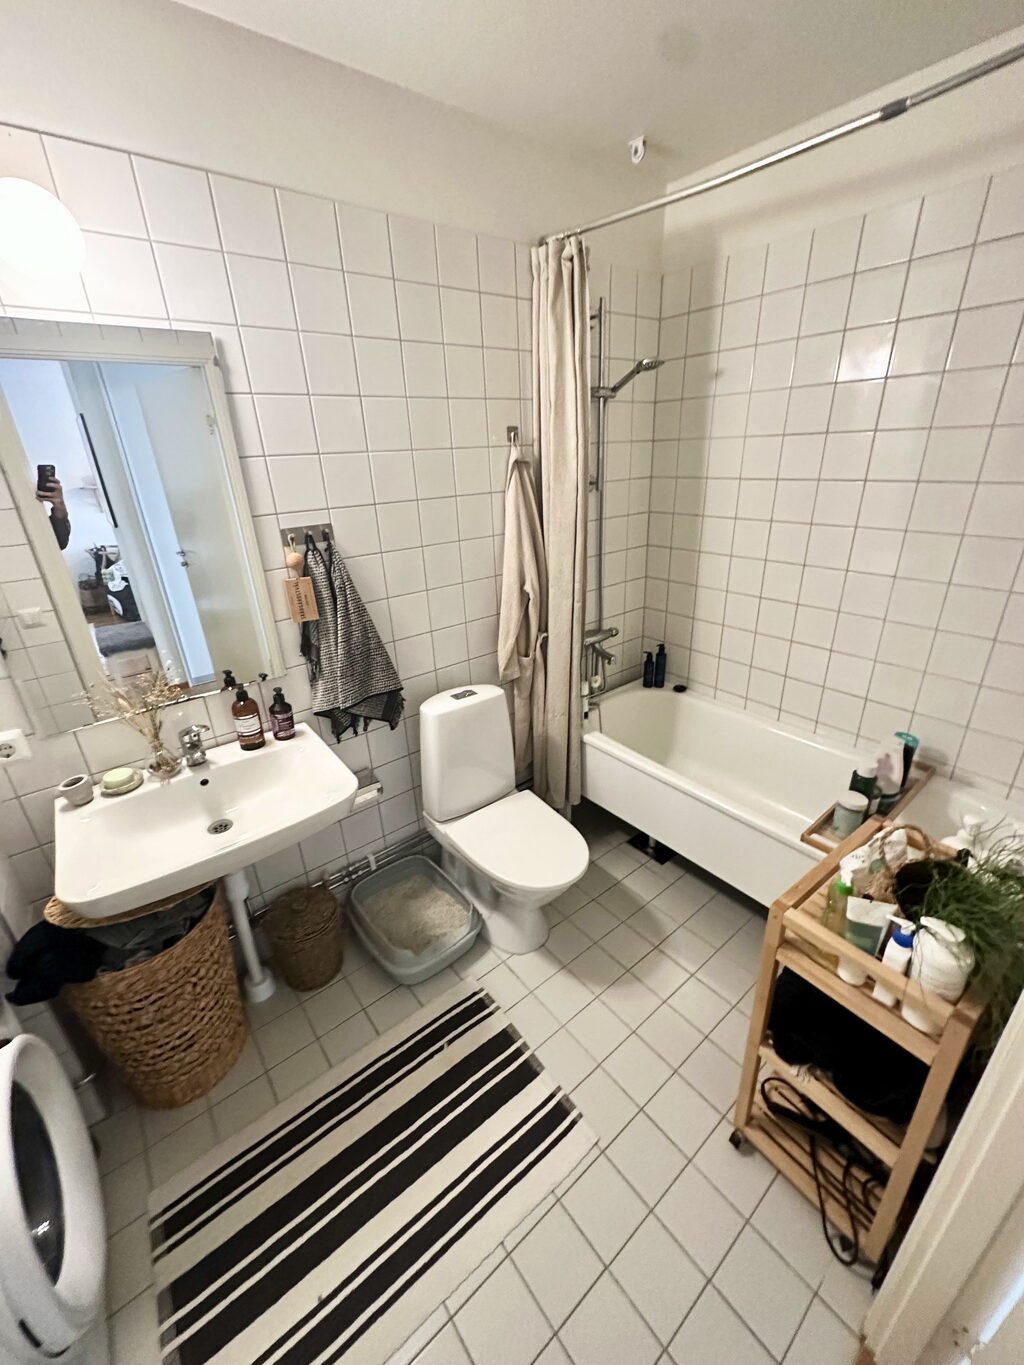 Lägenhetsbyte - Sjöviksbacken 41, 117 56 Stockholm